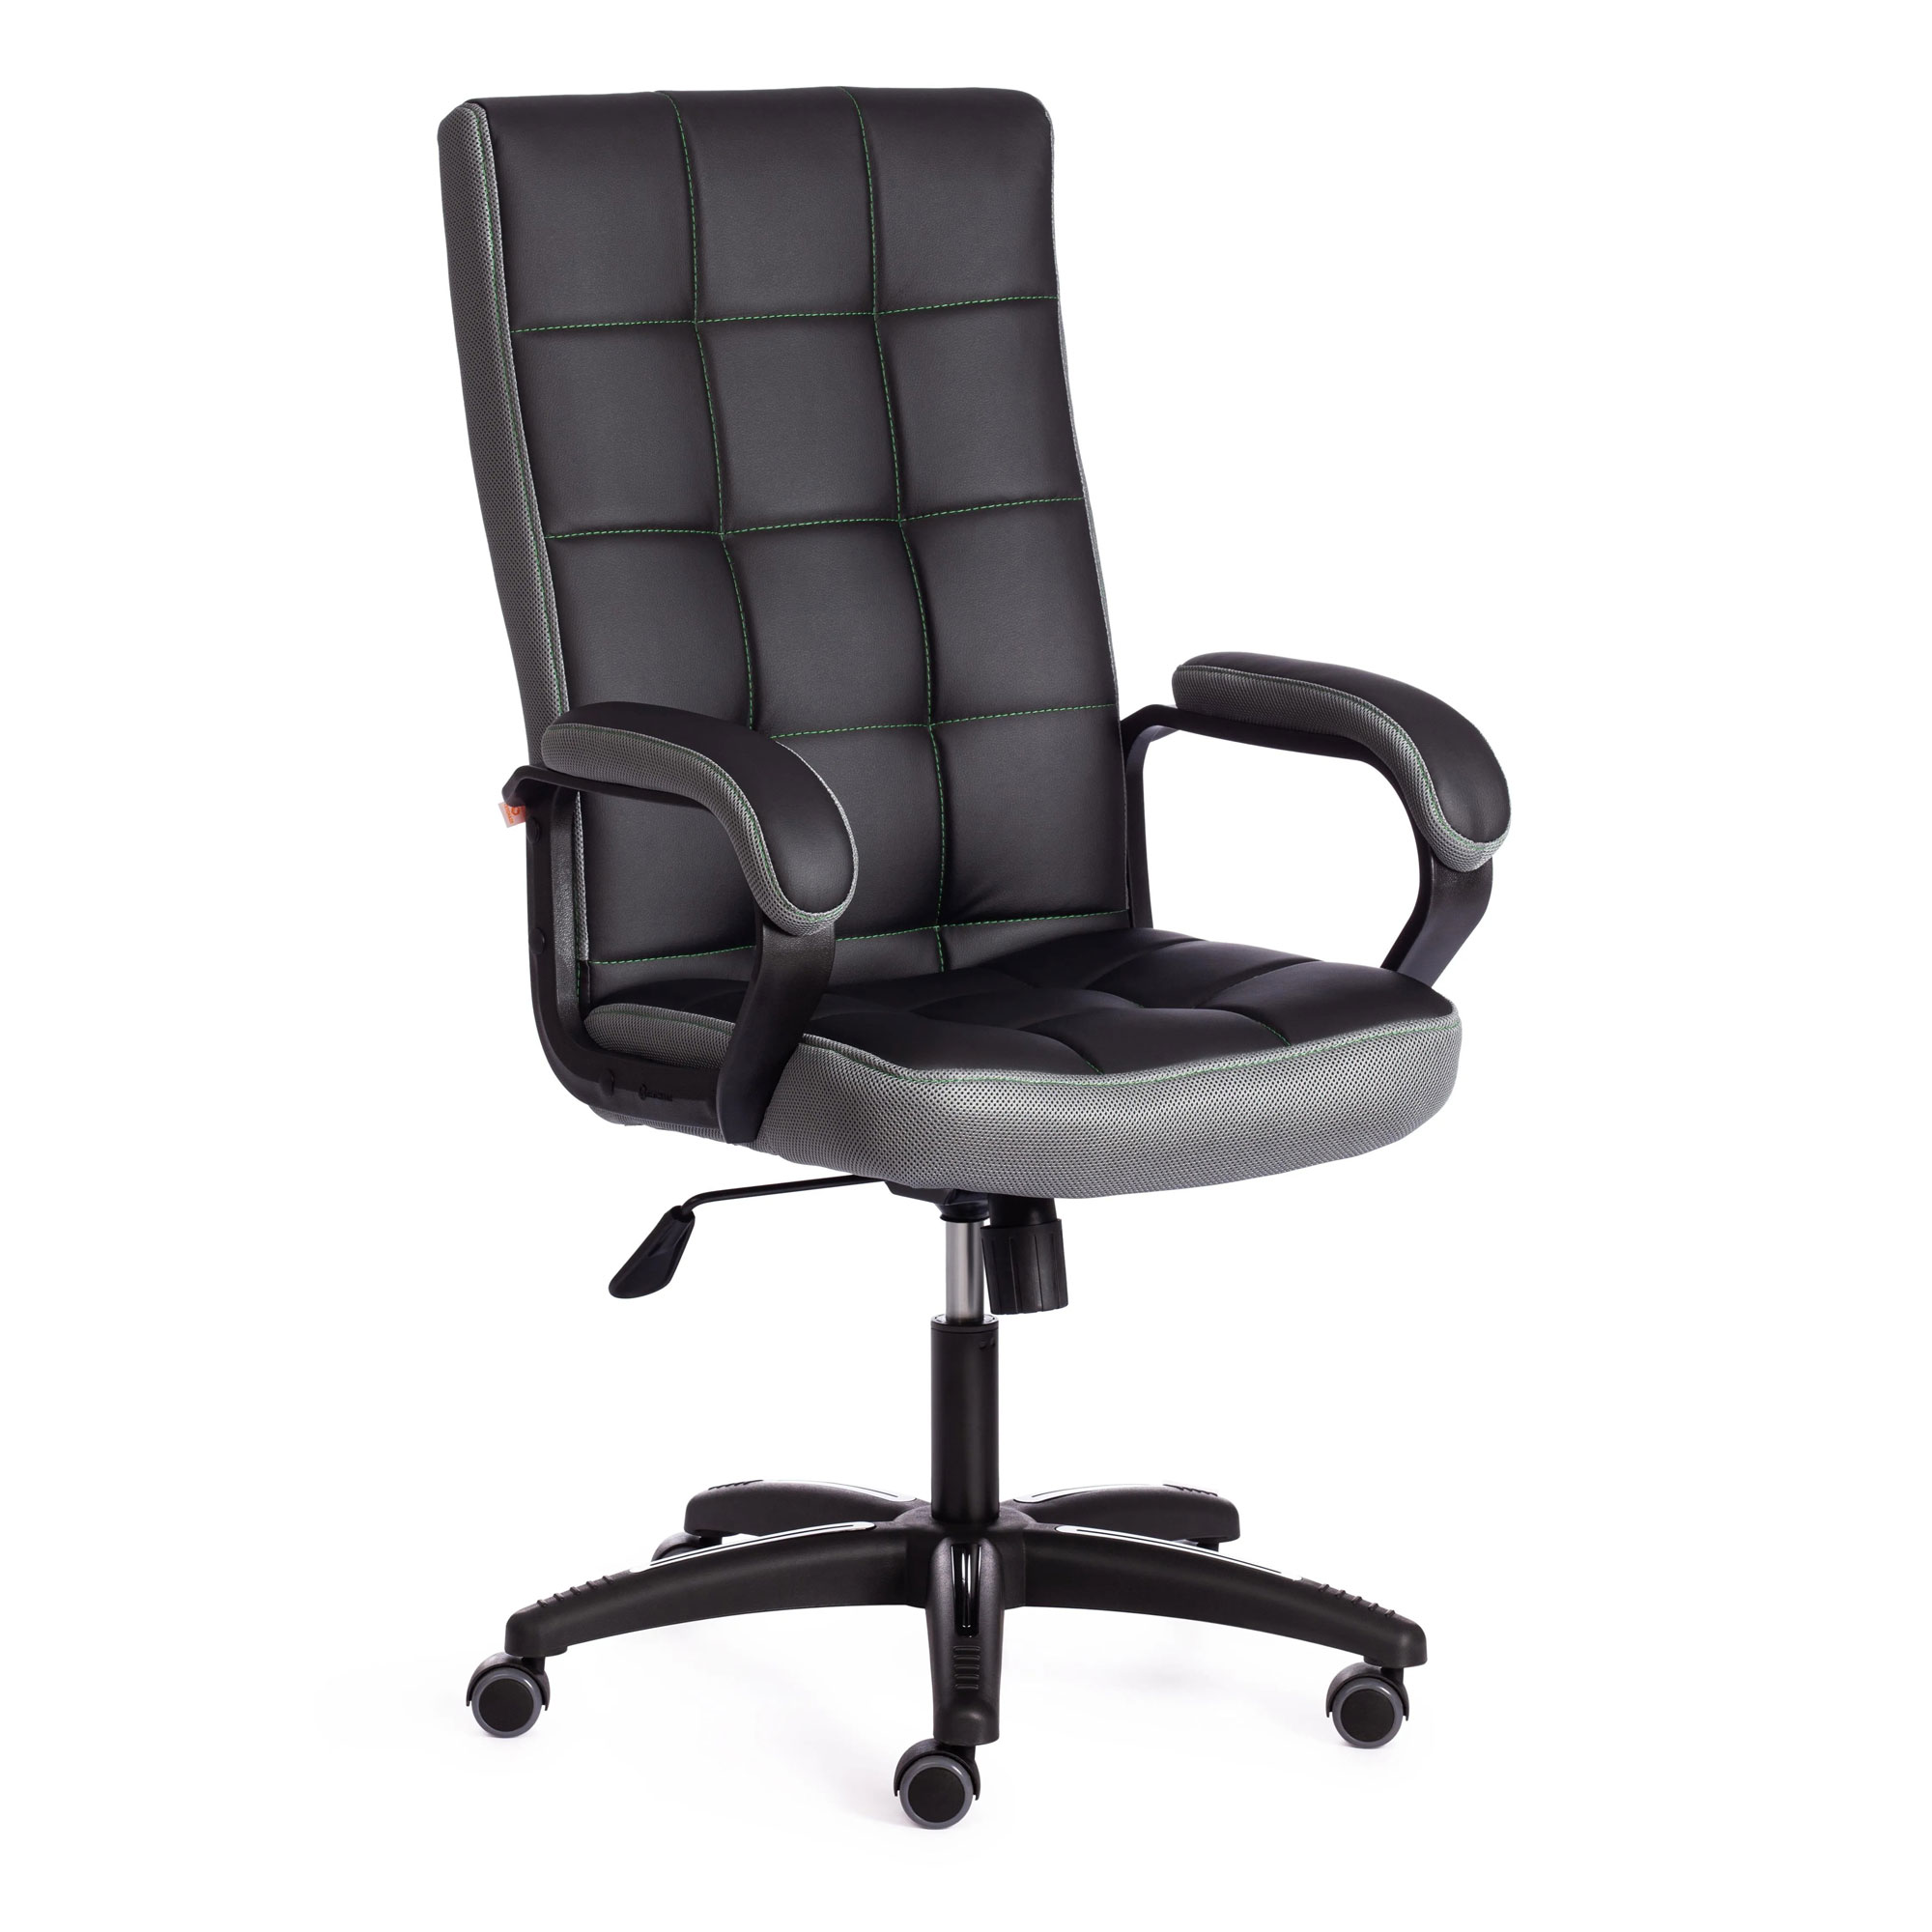 Кресло компьютерное TC искусственная кожа чёрное с серым 61х47х126 см кресло компьютерное tc искусственная кожа чёрное с серым 61х47х126 см